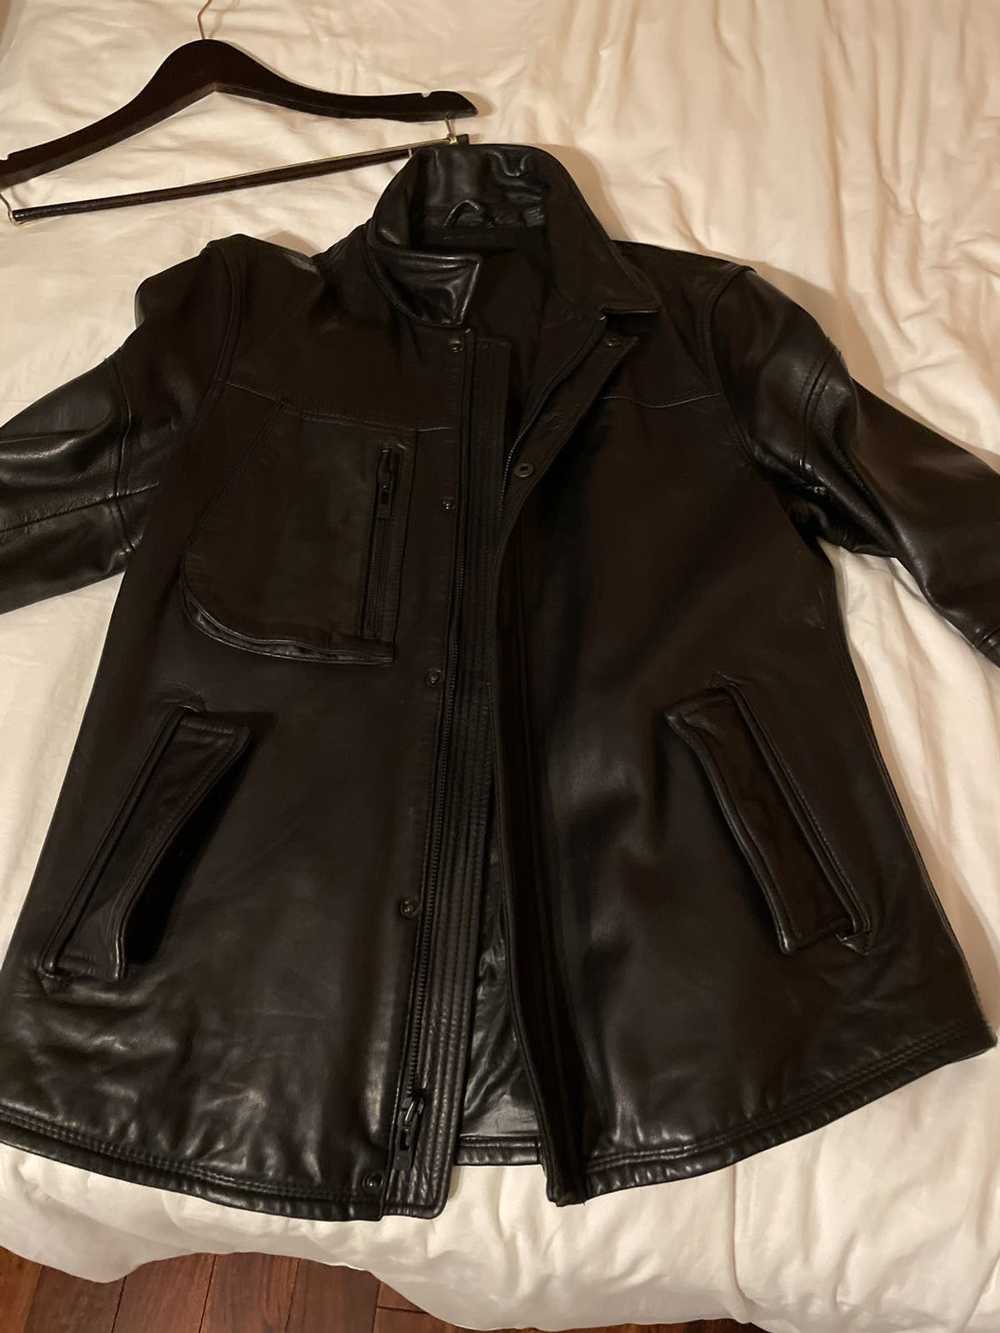 Rogue Leather shirt Jacket - image 1